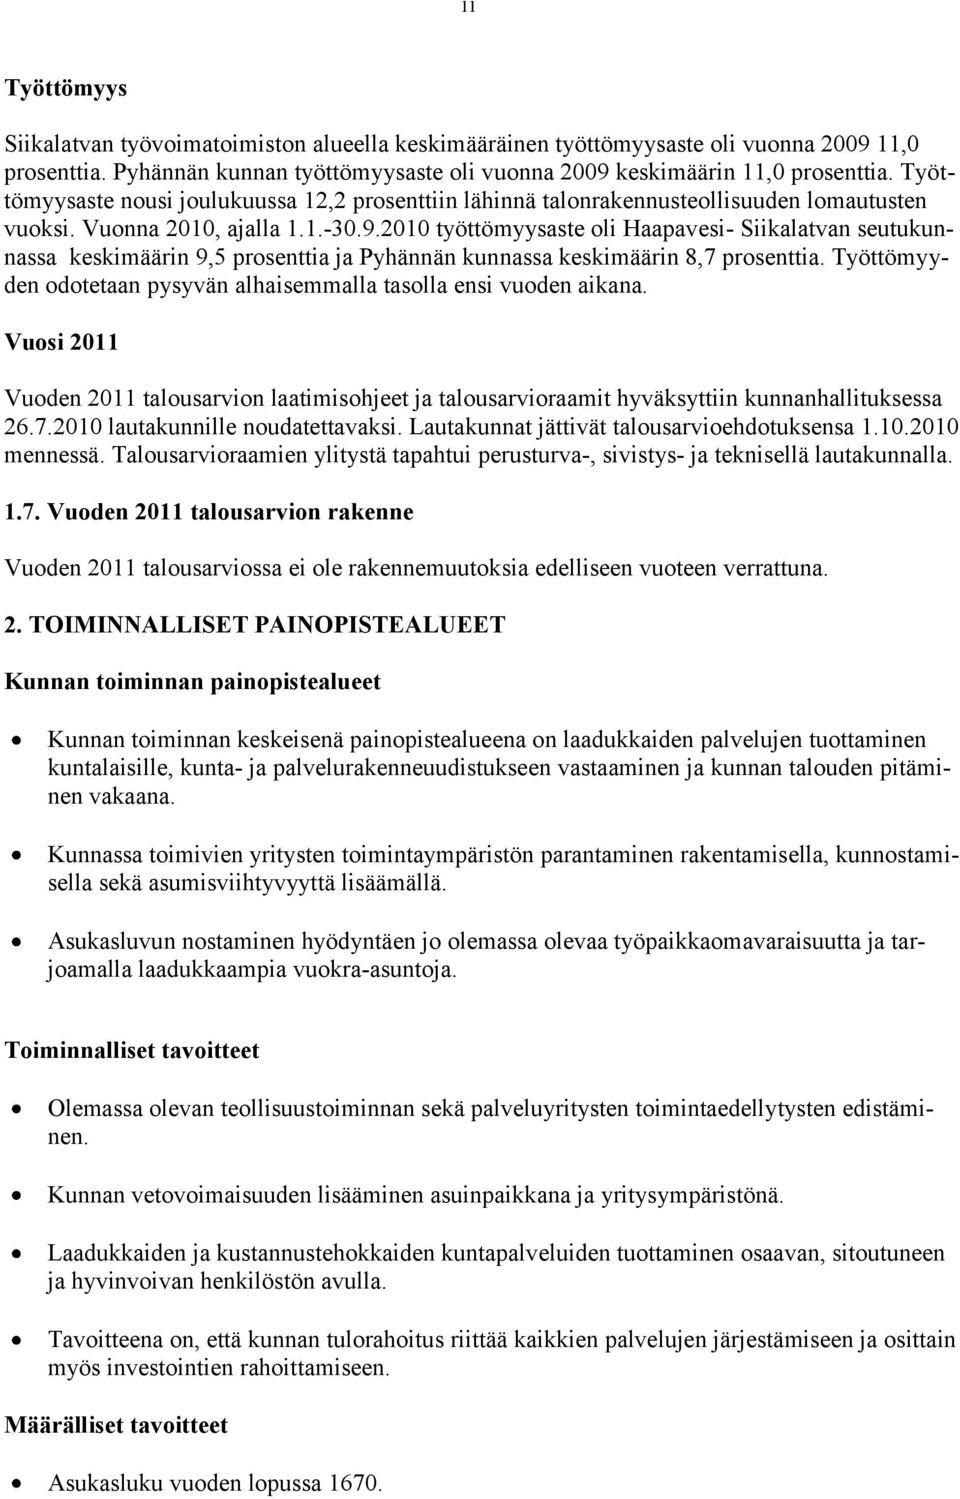 2010 työttömyysaste oli Haapavesi- Siikalatvan seutukunnassa keskimäärin 9,5 prosenttia ja Pyhännän kunnassa keskimäärin 8,7 prosenttia.